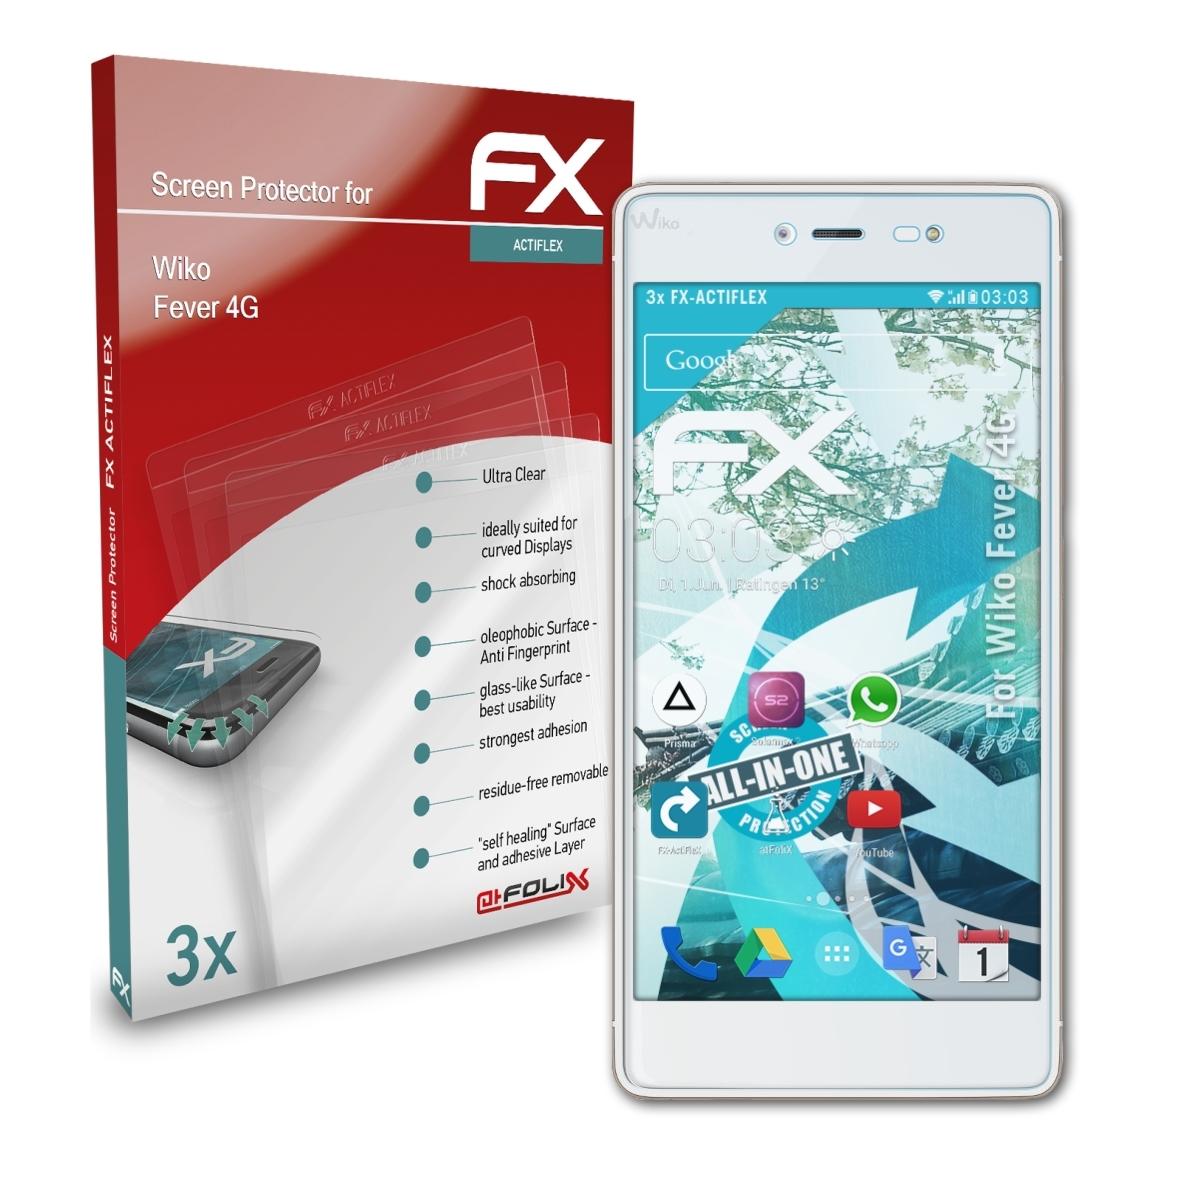 ATFOLIX FX-ActiFleX Wiko 4G) Fever 3x Displayschutz(für